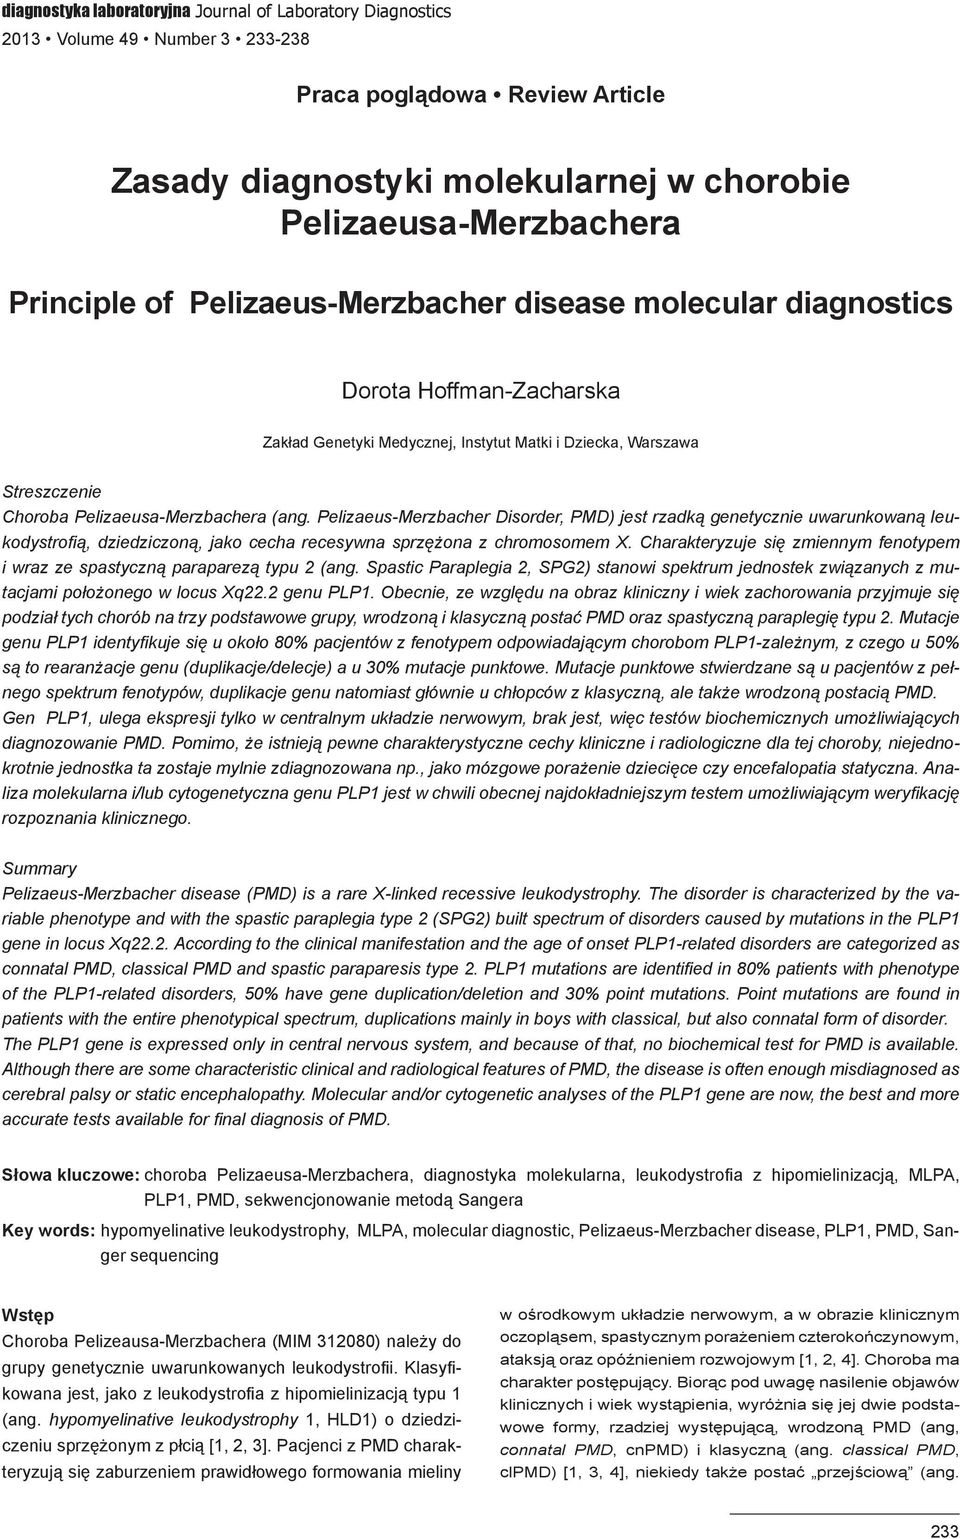 Pelizaeus-Merzbacher Disorder, PMD) jest rzadką genetycznie uwarunkowaną leukodystrofią, dziedziczoną, jako cecha recesywna sprzężona z chromosomem X.